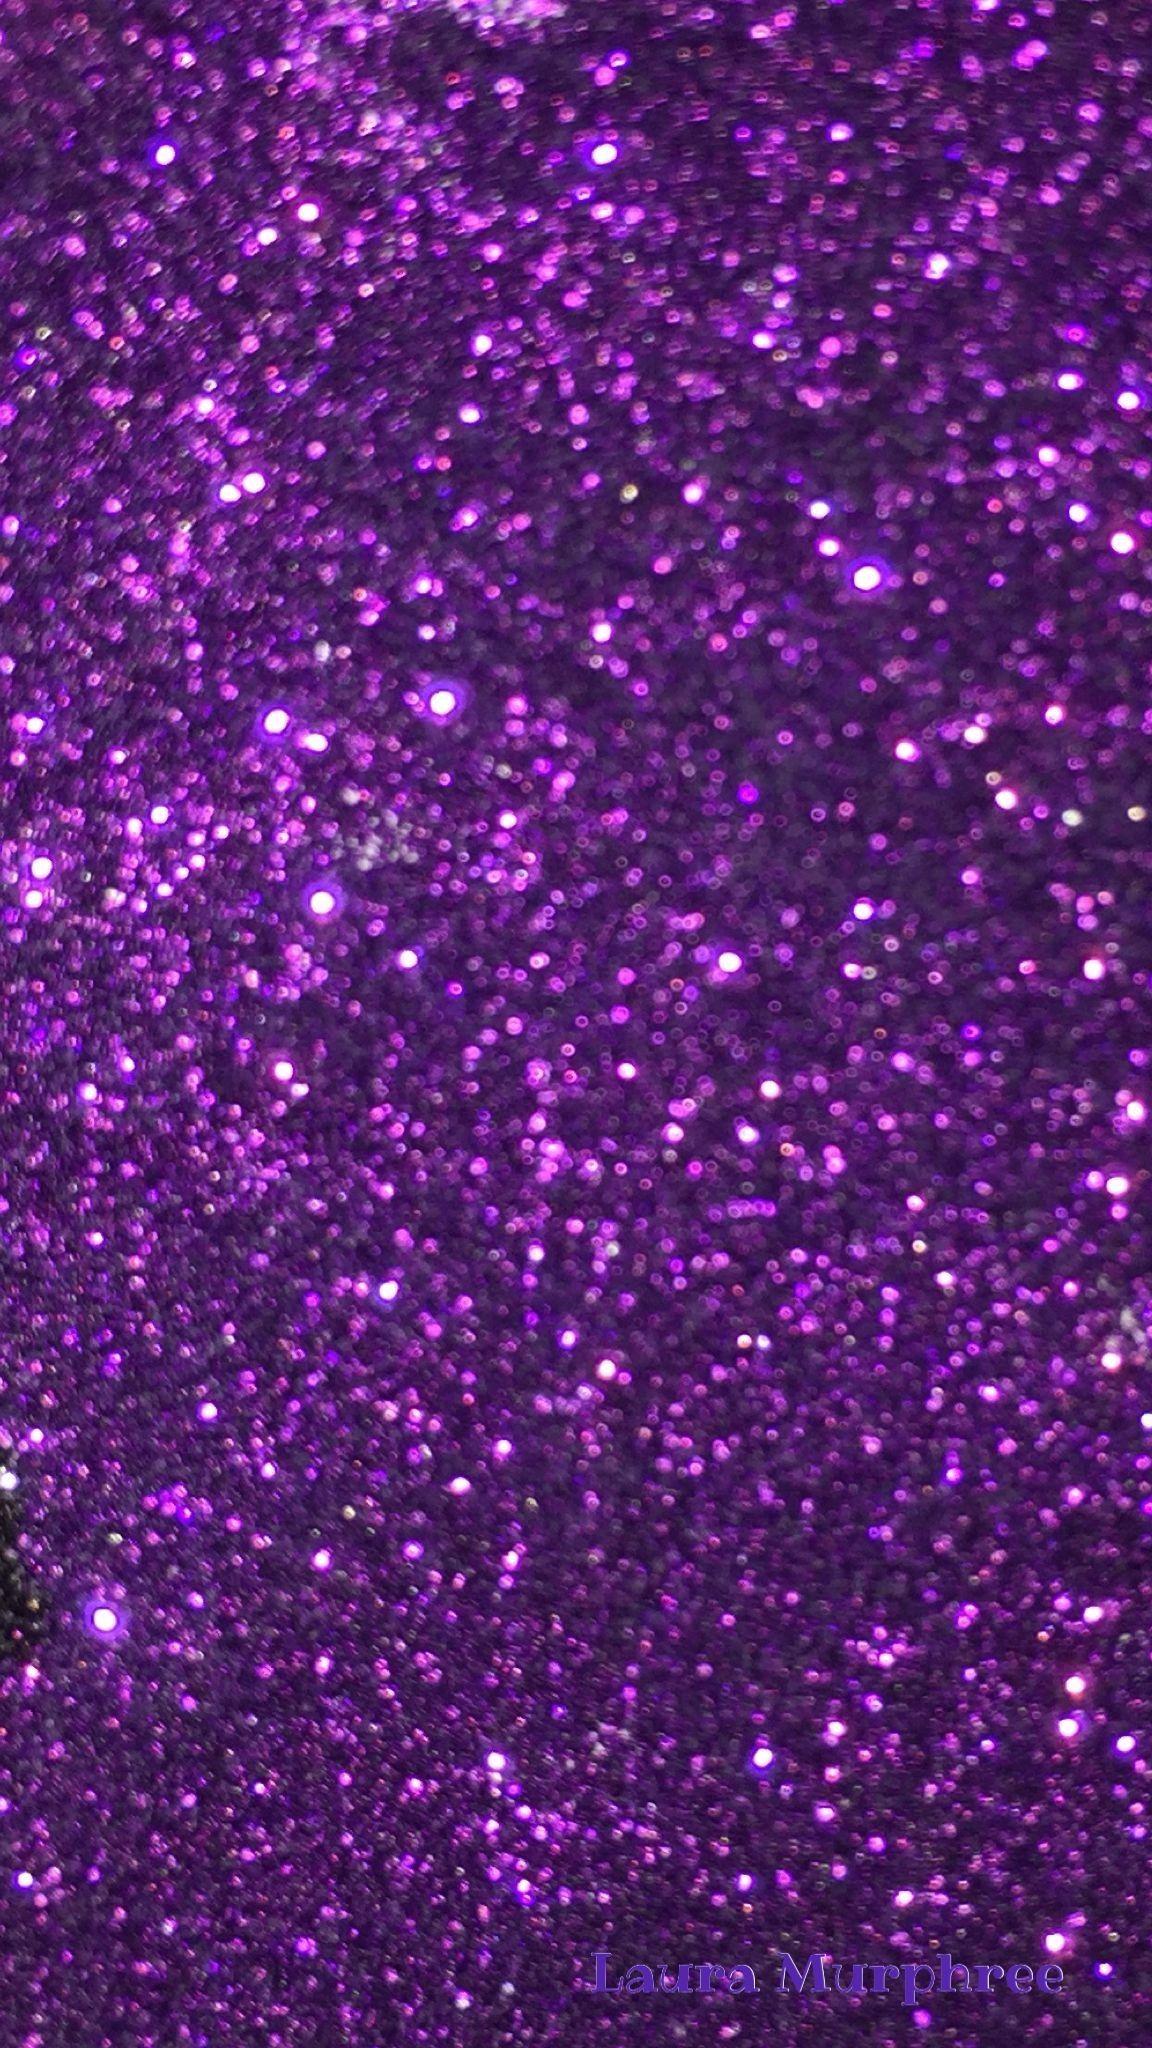 Purple Glitter Wallpapers - Top Free Purple Glitter Backgrounds ...